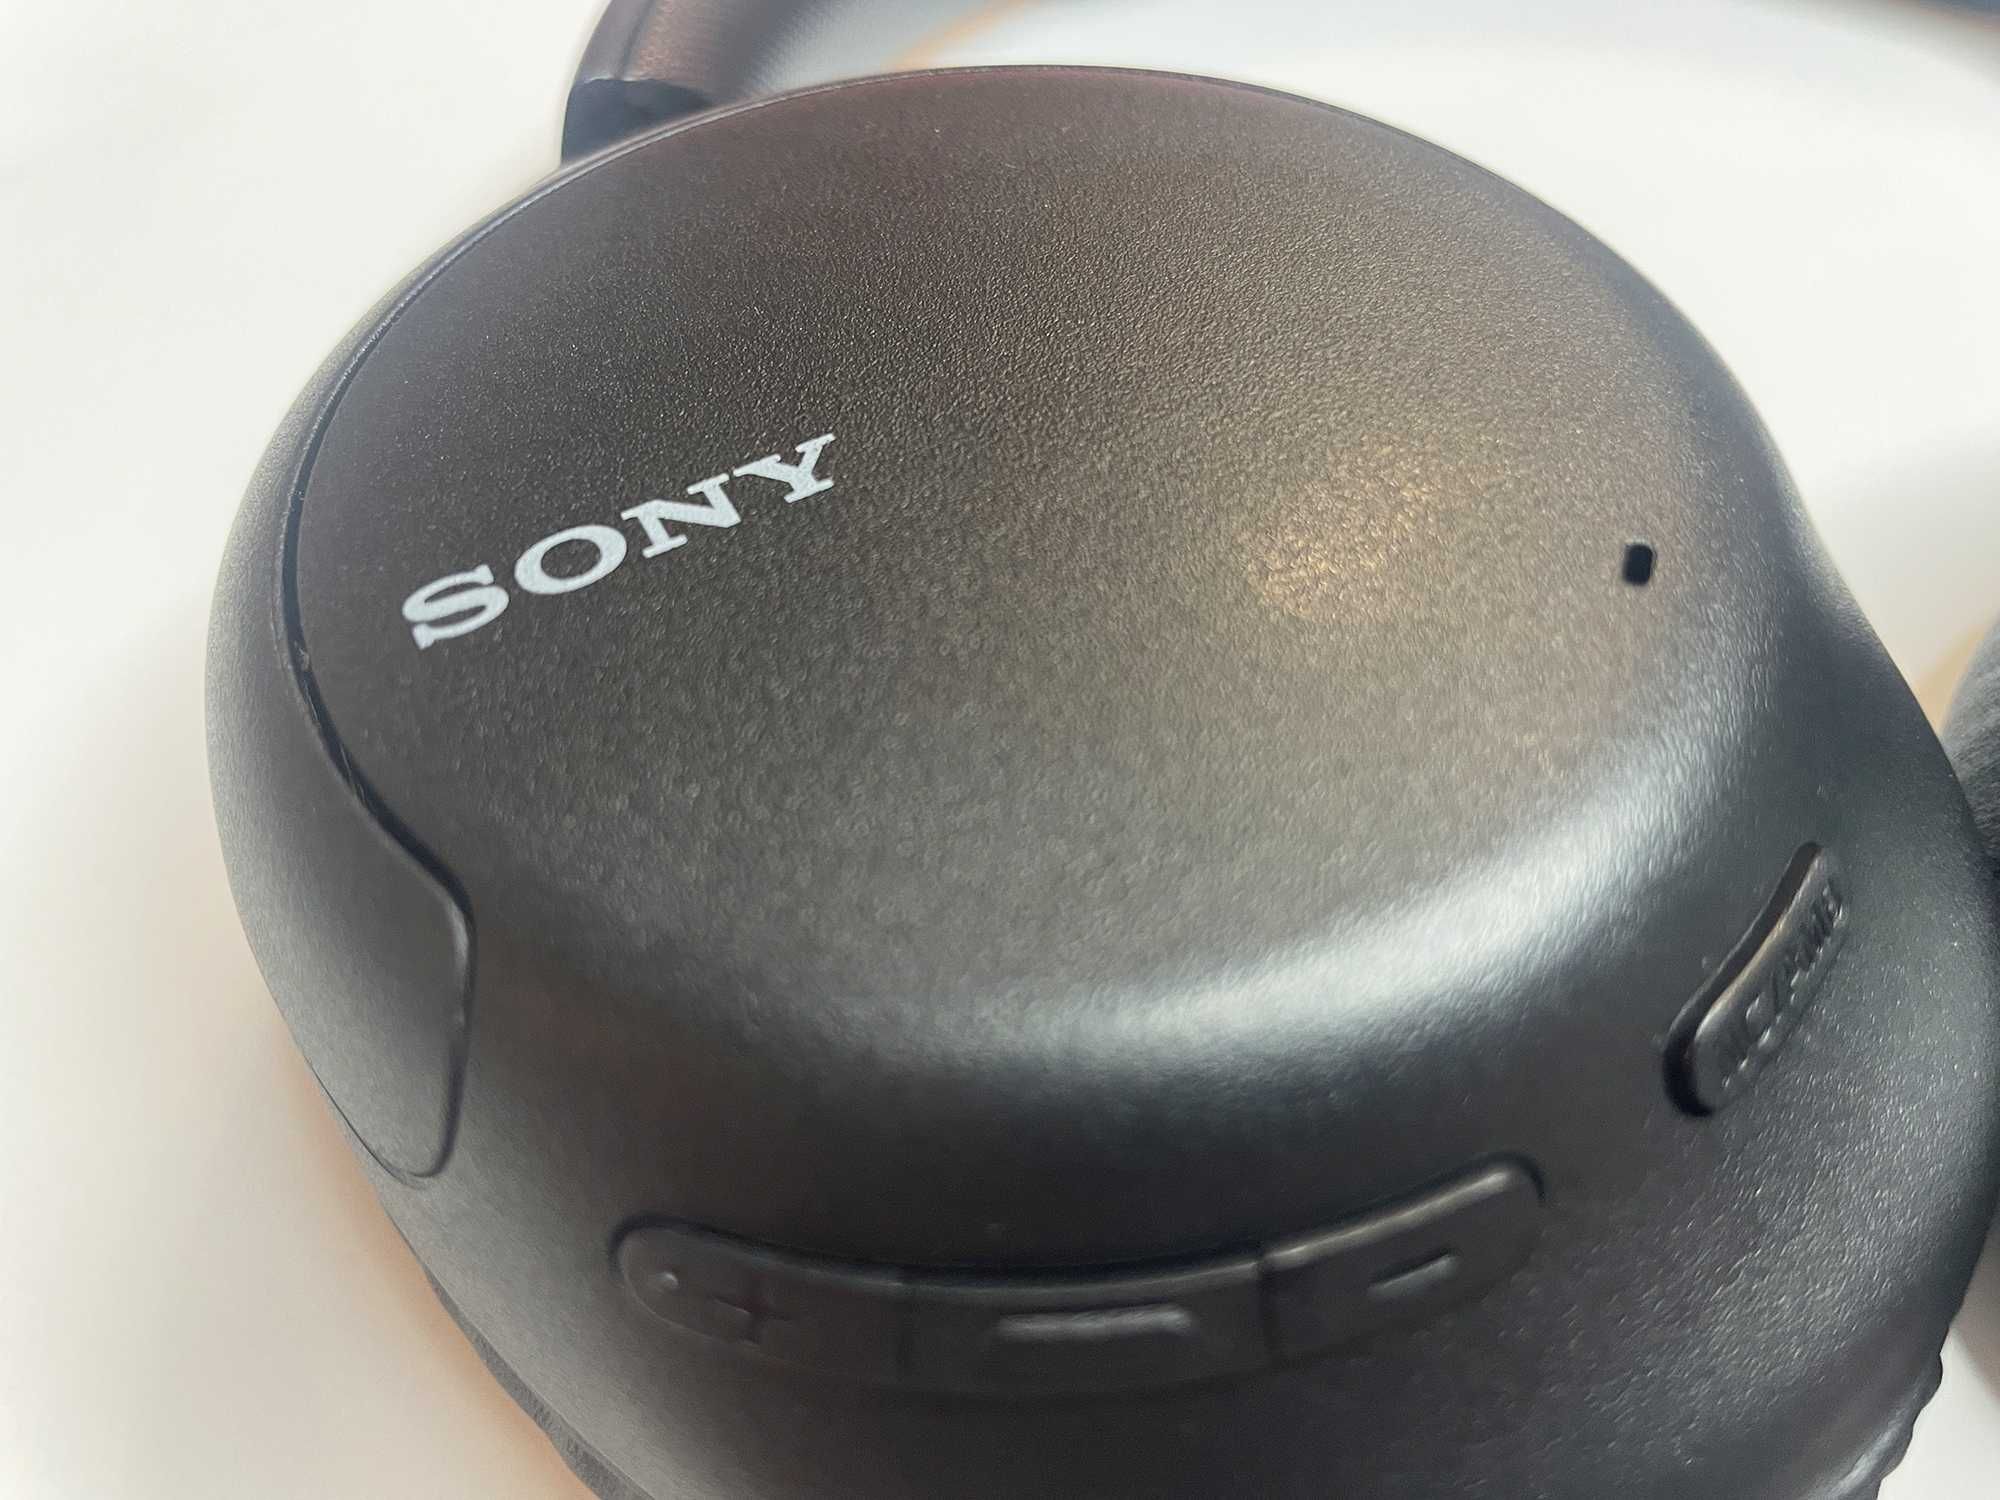 Навушники Sony WH-CH710N